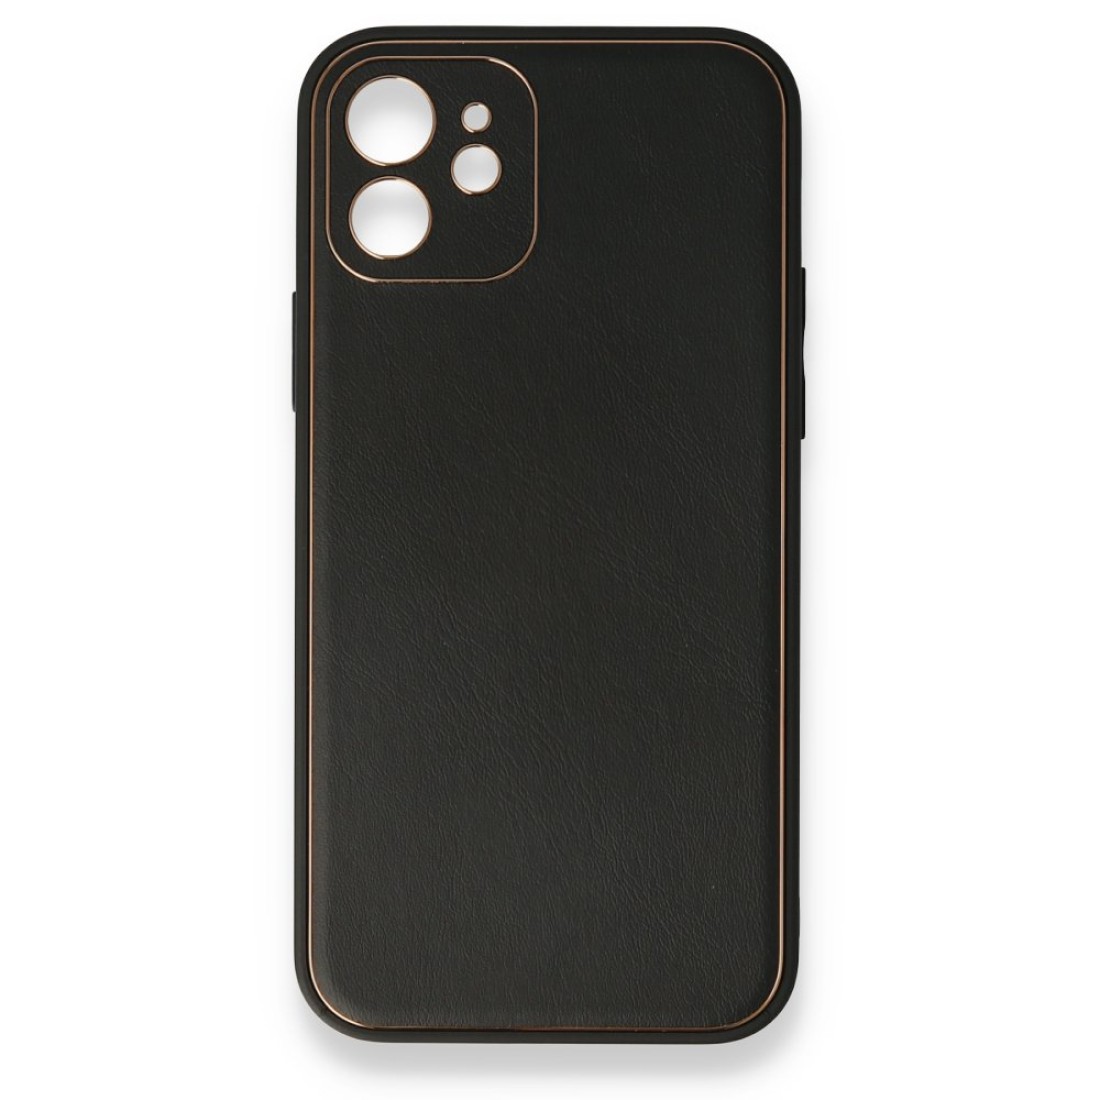 Apple iPhone 12 Mini Kılıf Coco Deri Silikon Kapak - Siyah